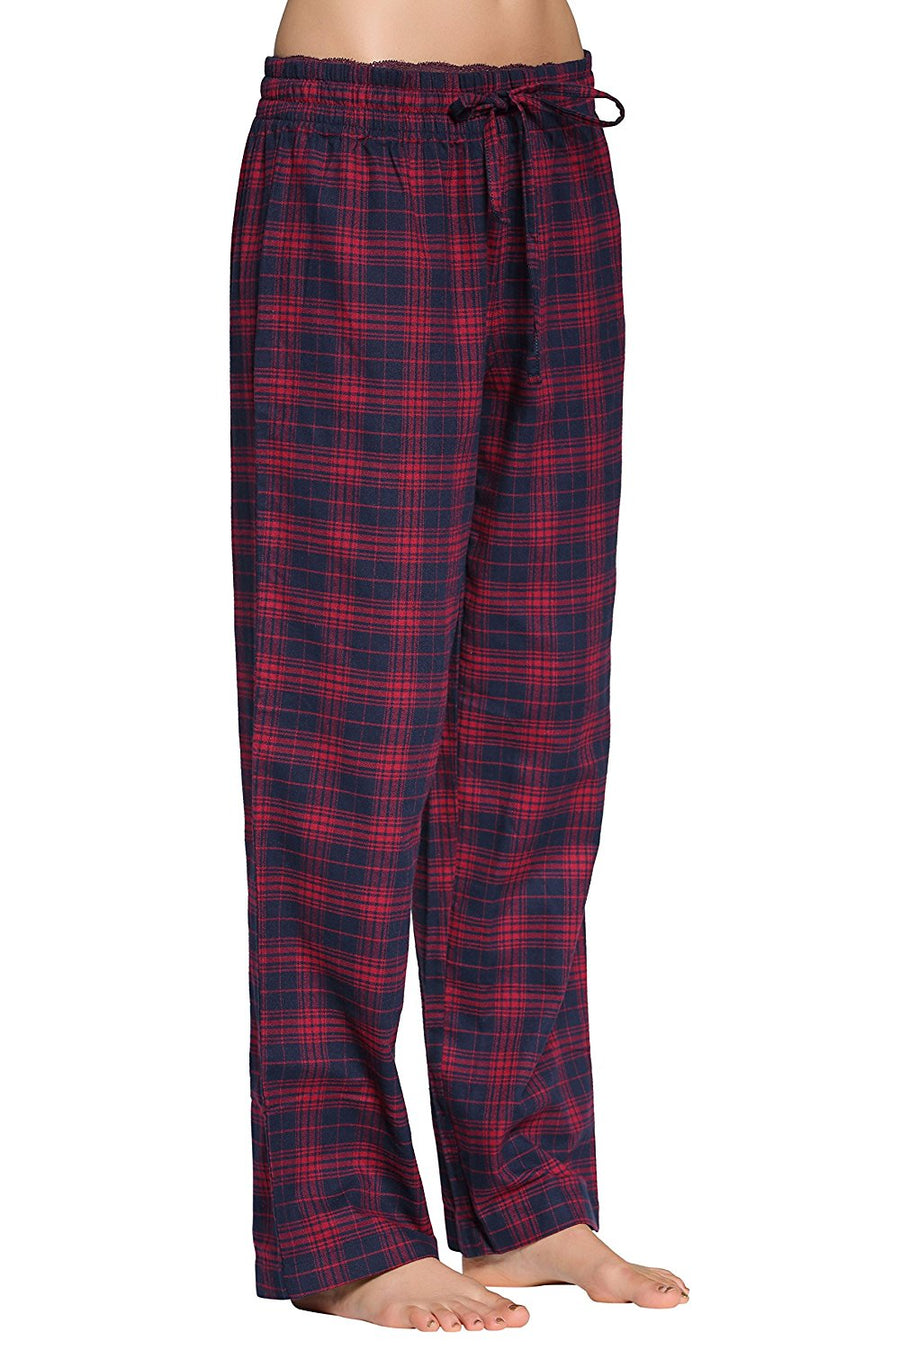 CYZ Women's 100% Cotton Super Soft Flannel Plaid Pajama/Louge